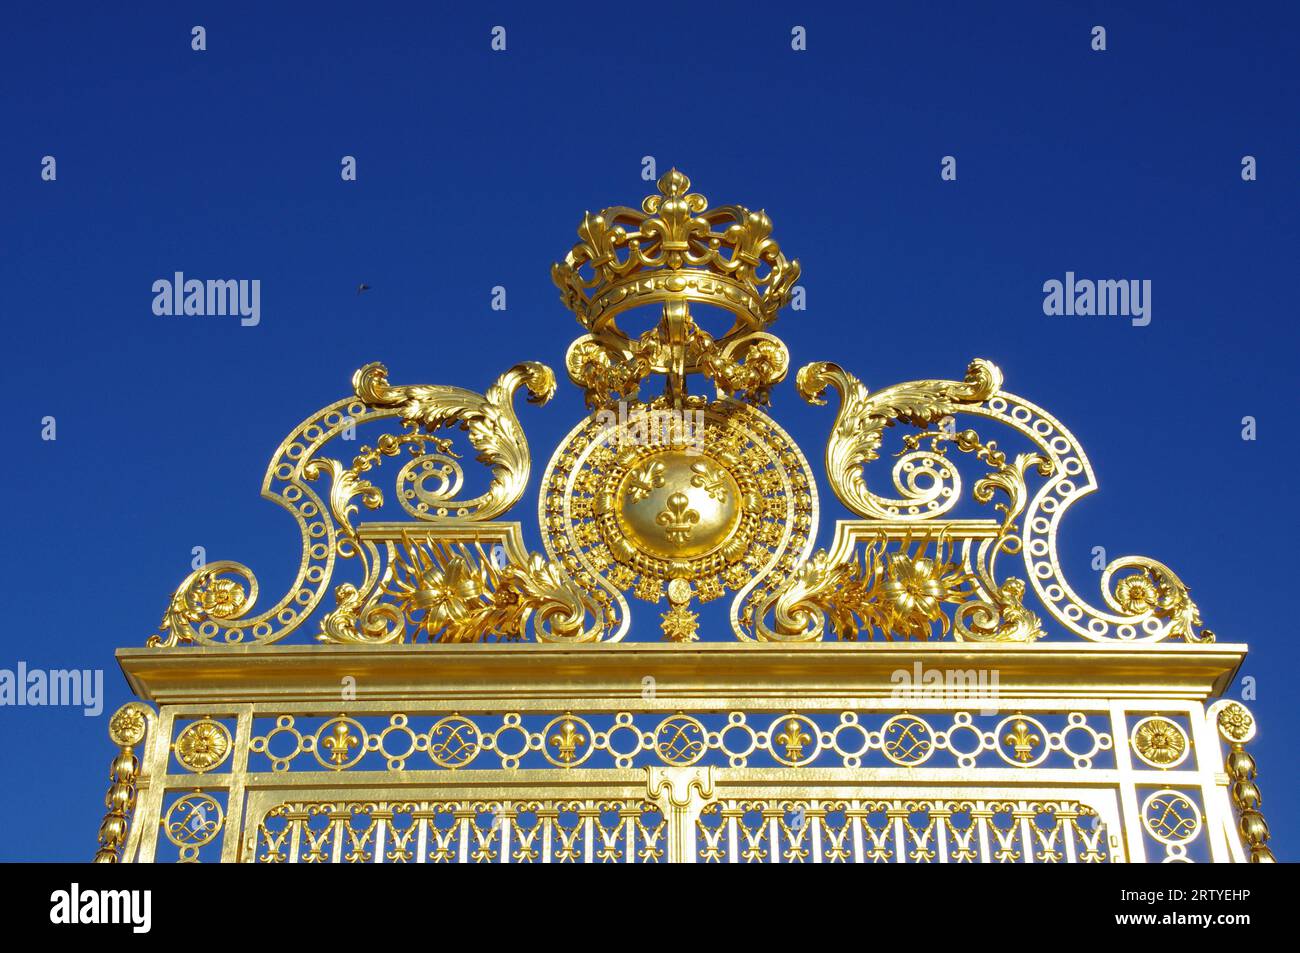 Le bellissime porte d'Oro fuori dalla Reggia di Versailles, sotto un cielo azzurro. Versailles, Francia. Foto Stock